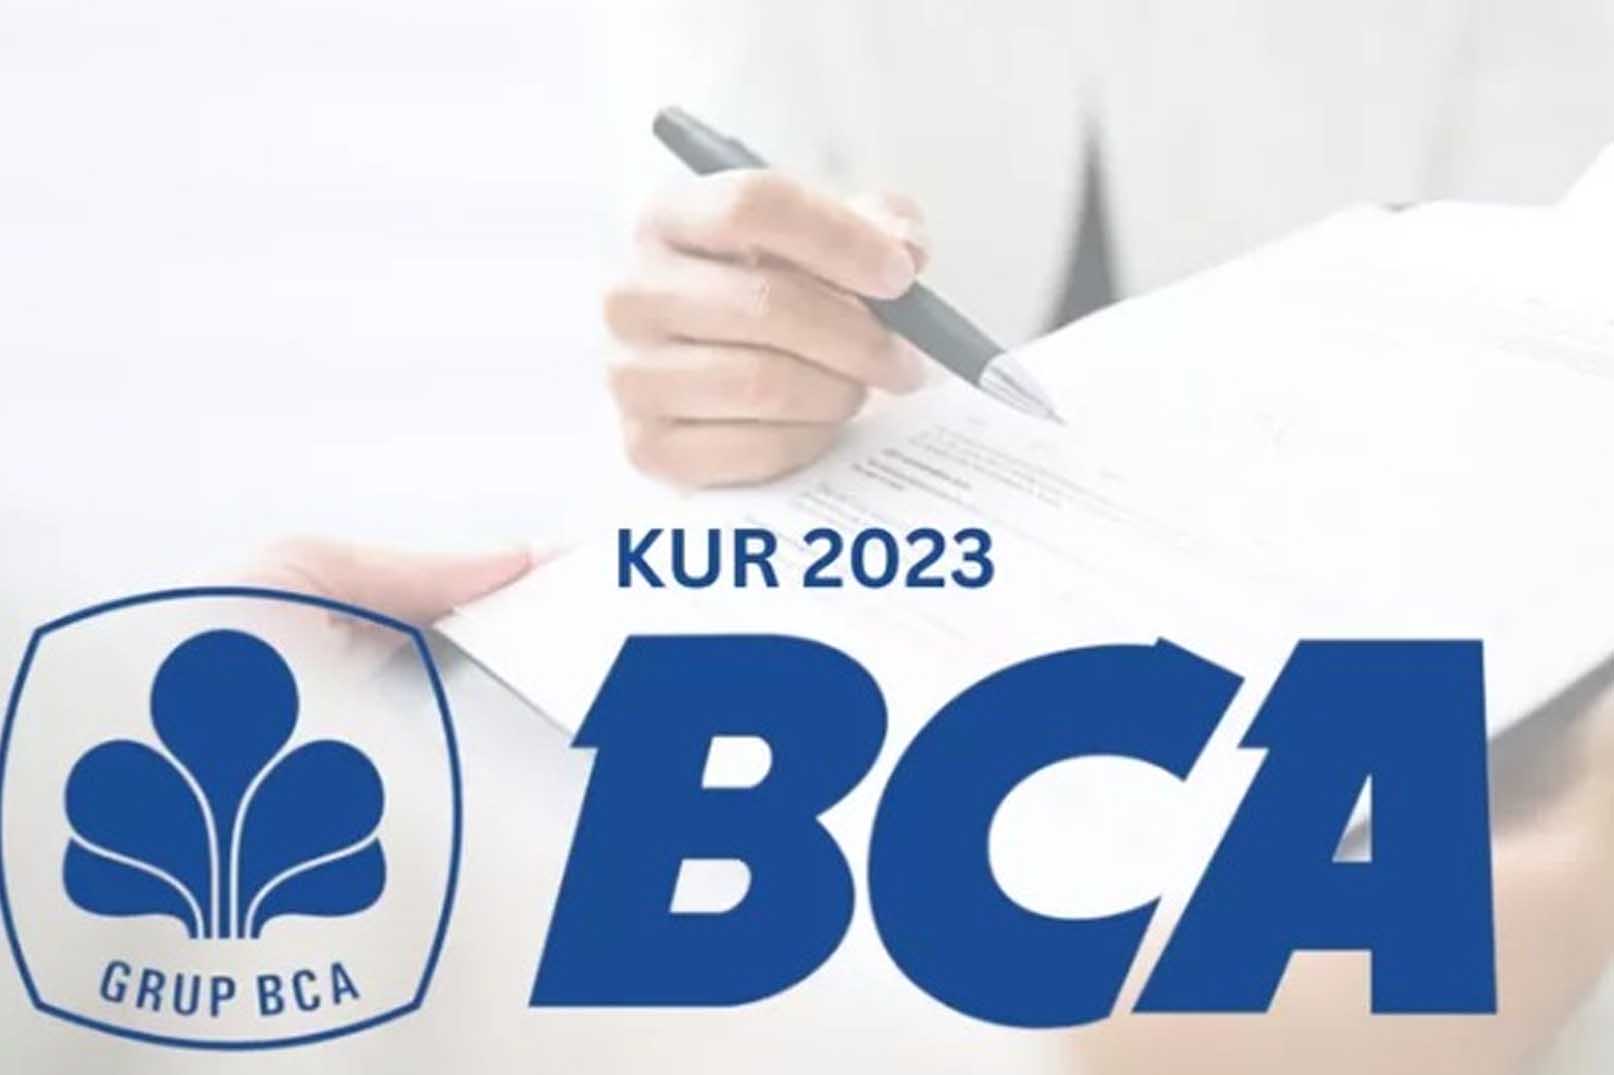 KUR BCA 2023: Pengajuan KUR Tanpa Jaminan Rp100 Juta sampai Rp500 Juta Angsuran Rendah, Cek Disini